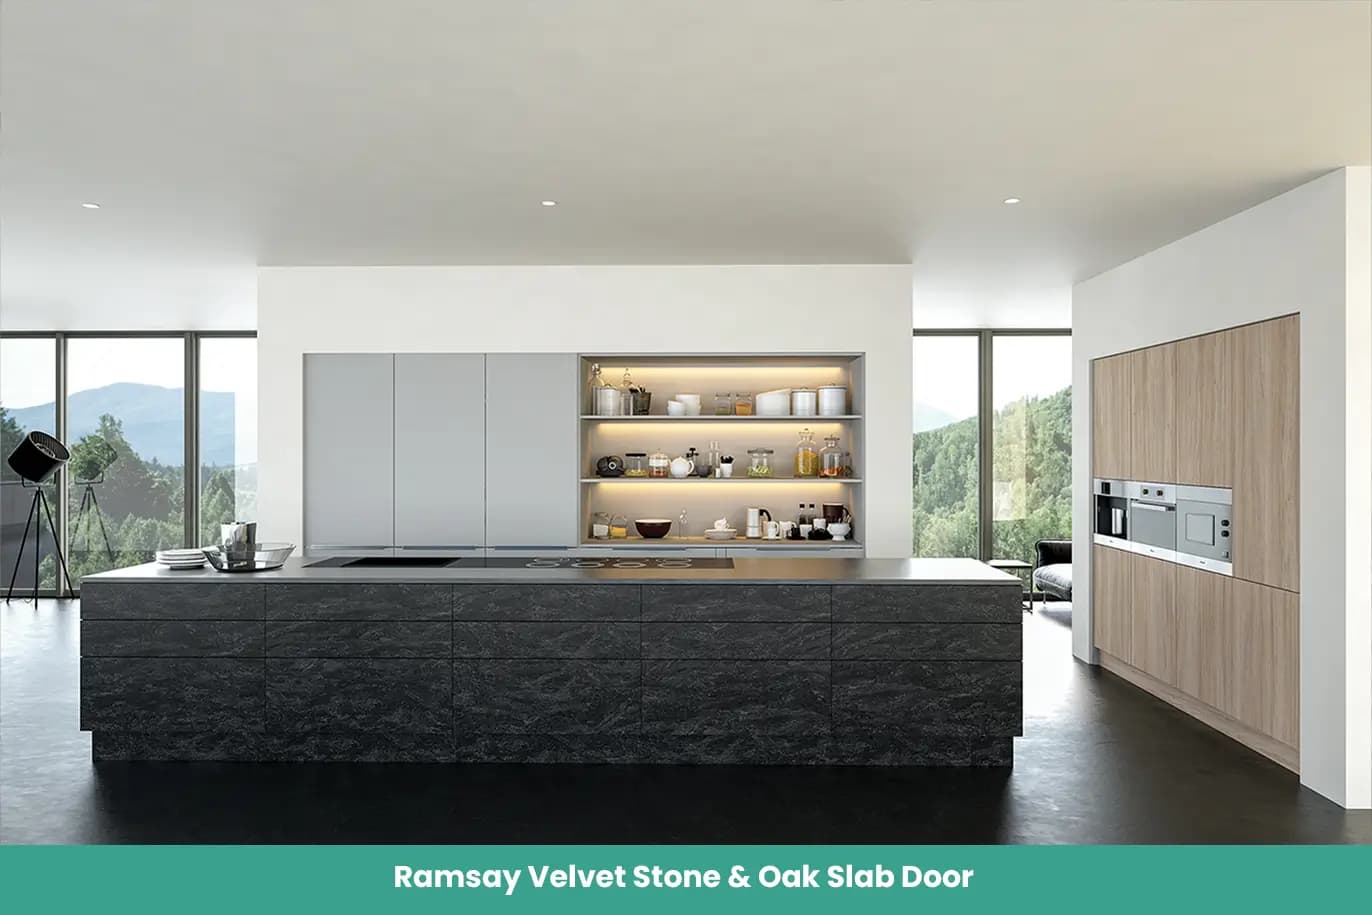 Ramsay Velvet Stone Oak Slab Door Kitchen Integrated Metal Handle